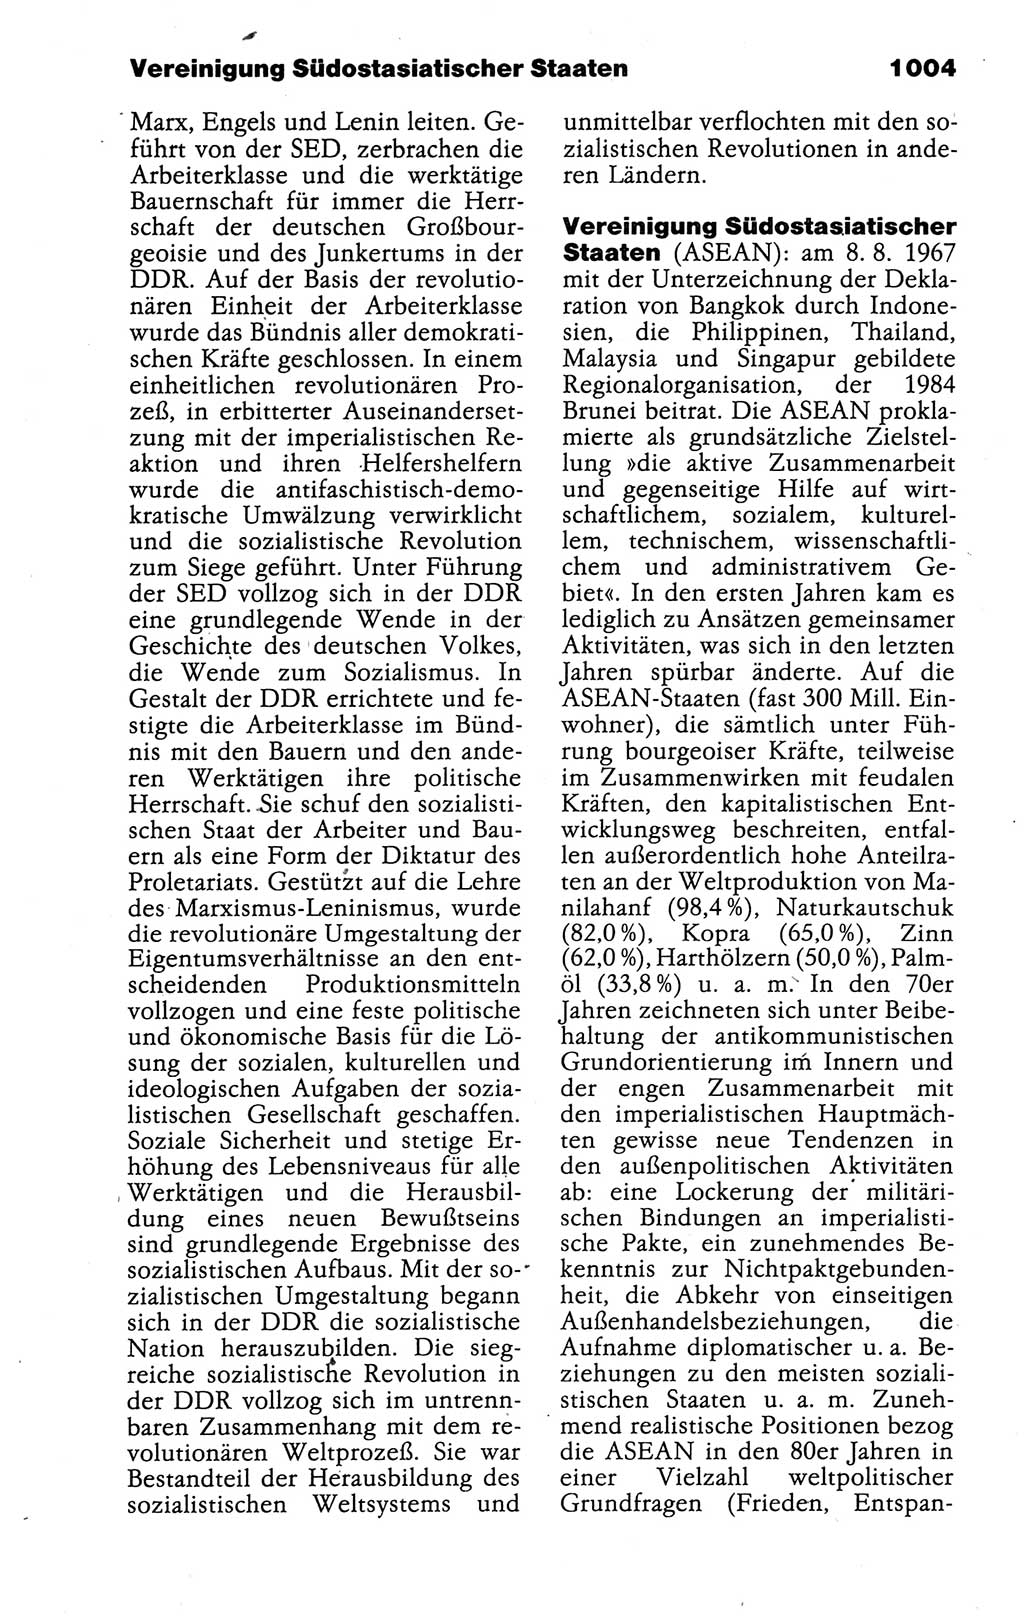 Kleines politisches Wörterbuch [Deutsche Demokratische Republik (DDR)] 1988, Seite 1004 (Kl. pol. Wb. DDR 1988, S. 1004)